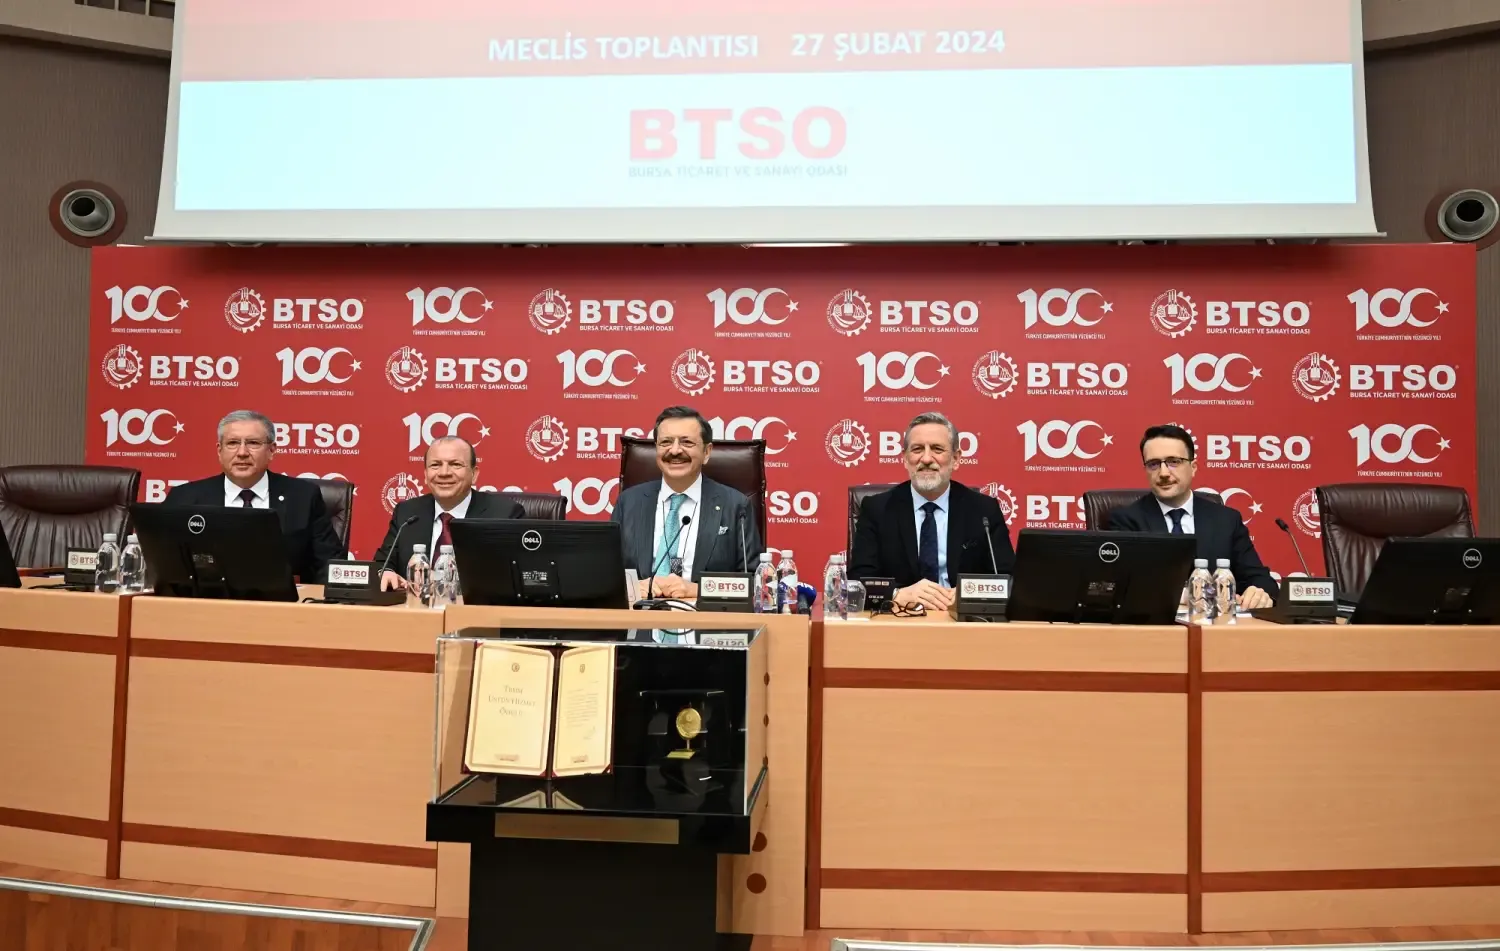 TOBB Başkanı Hisarcıklıoğlu: “BTSO Proje Fabrikası Haline Geldi”